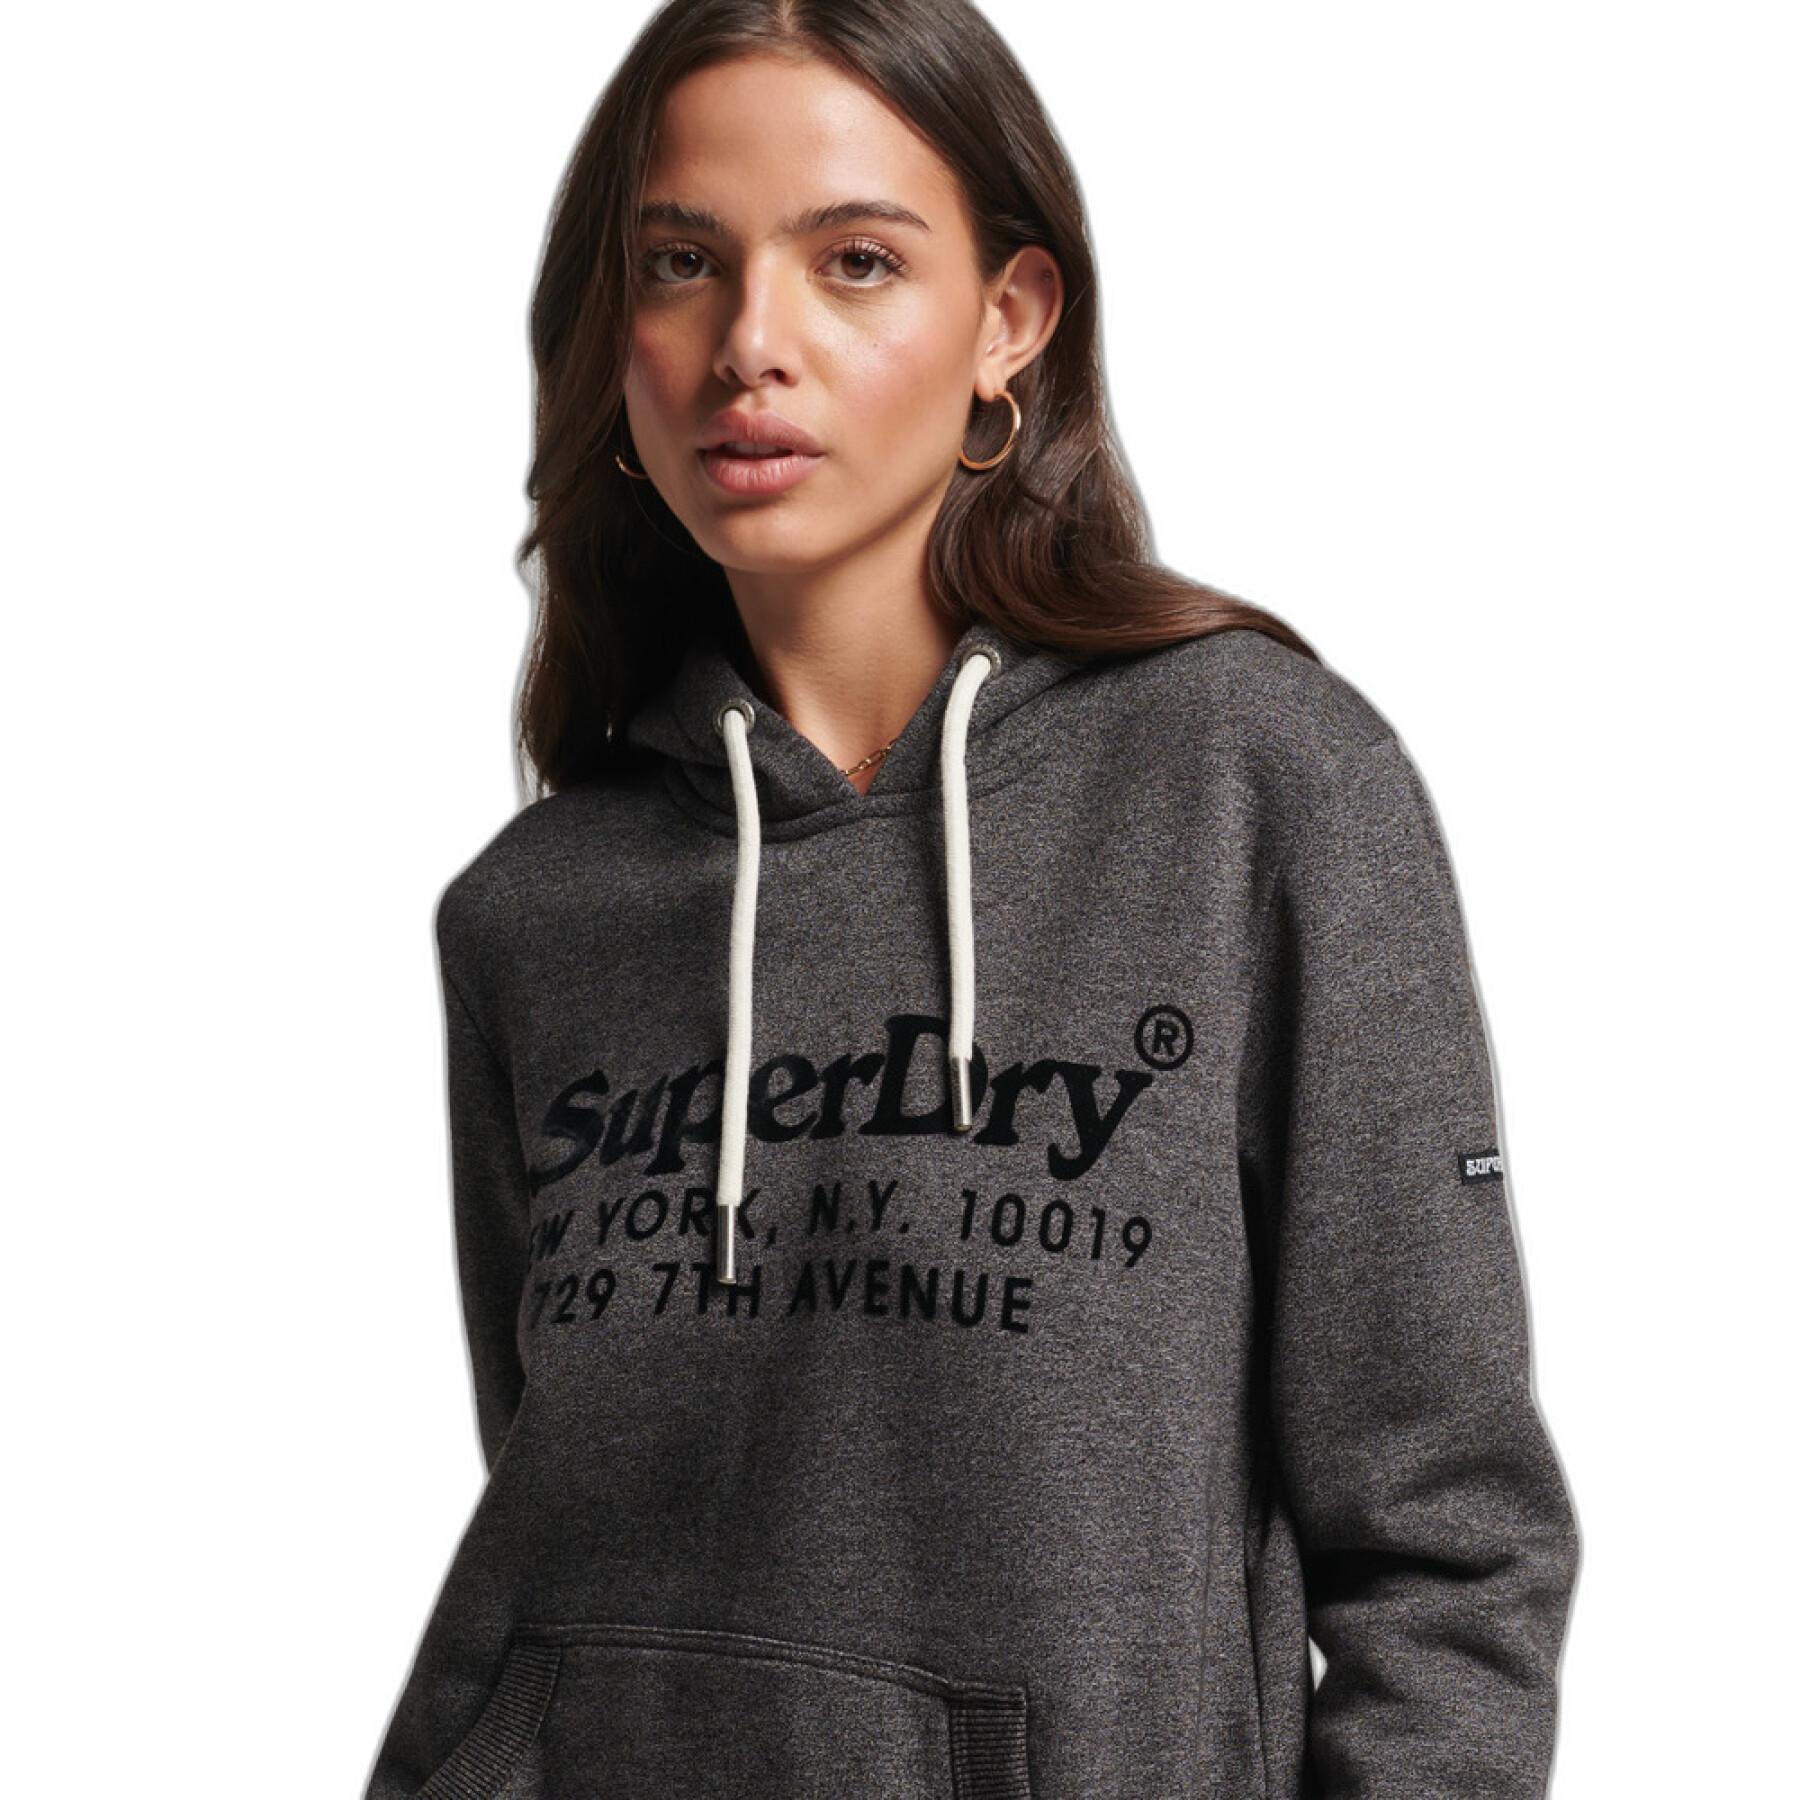 Sweatshirt capuz feminino Superdry Venue Interest